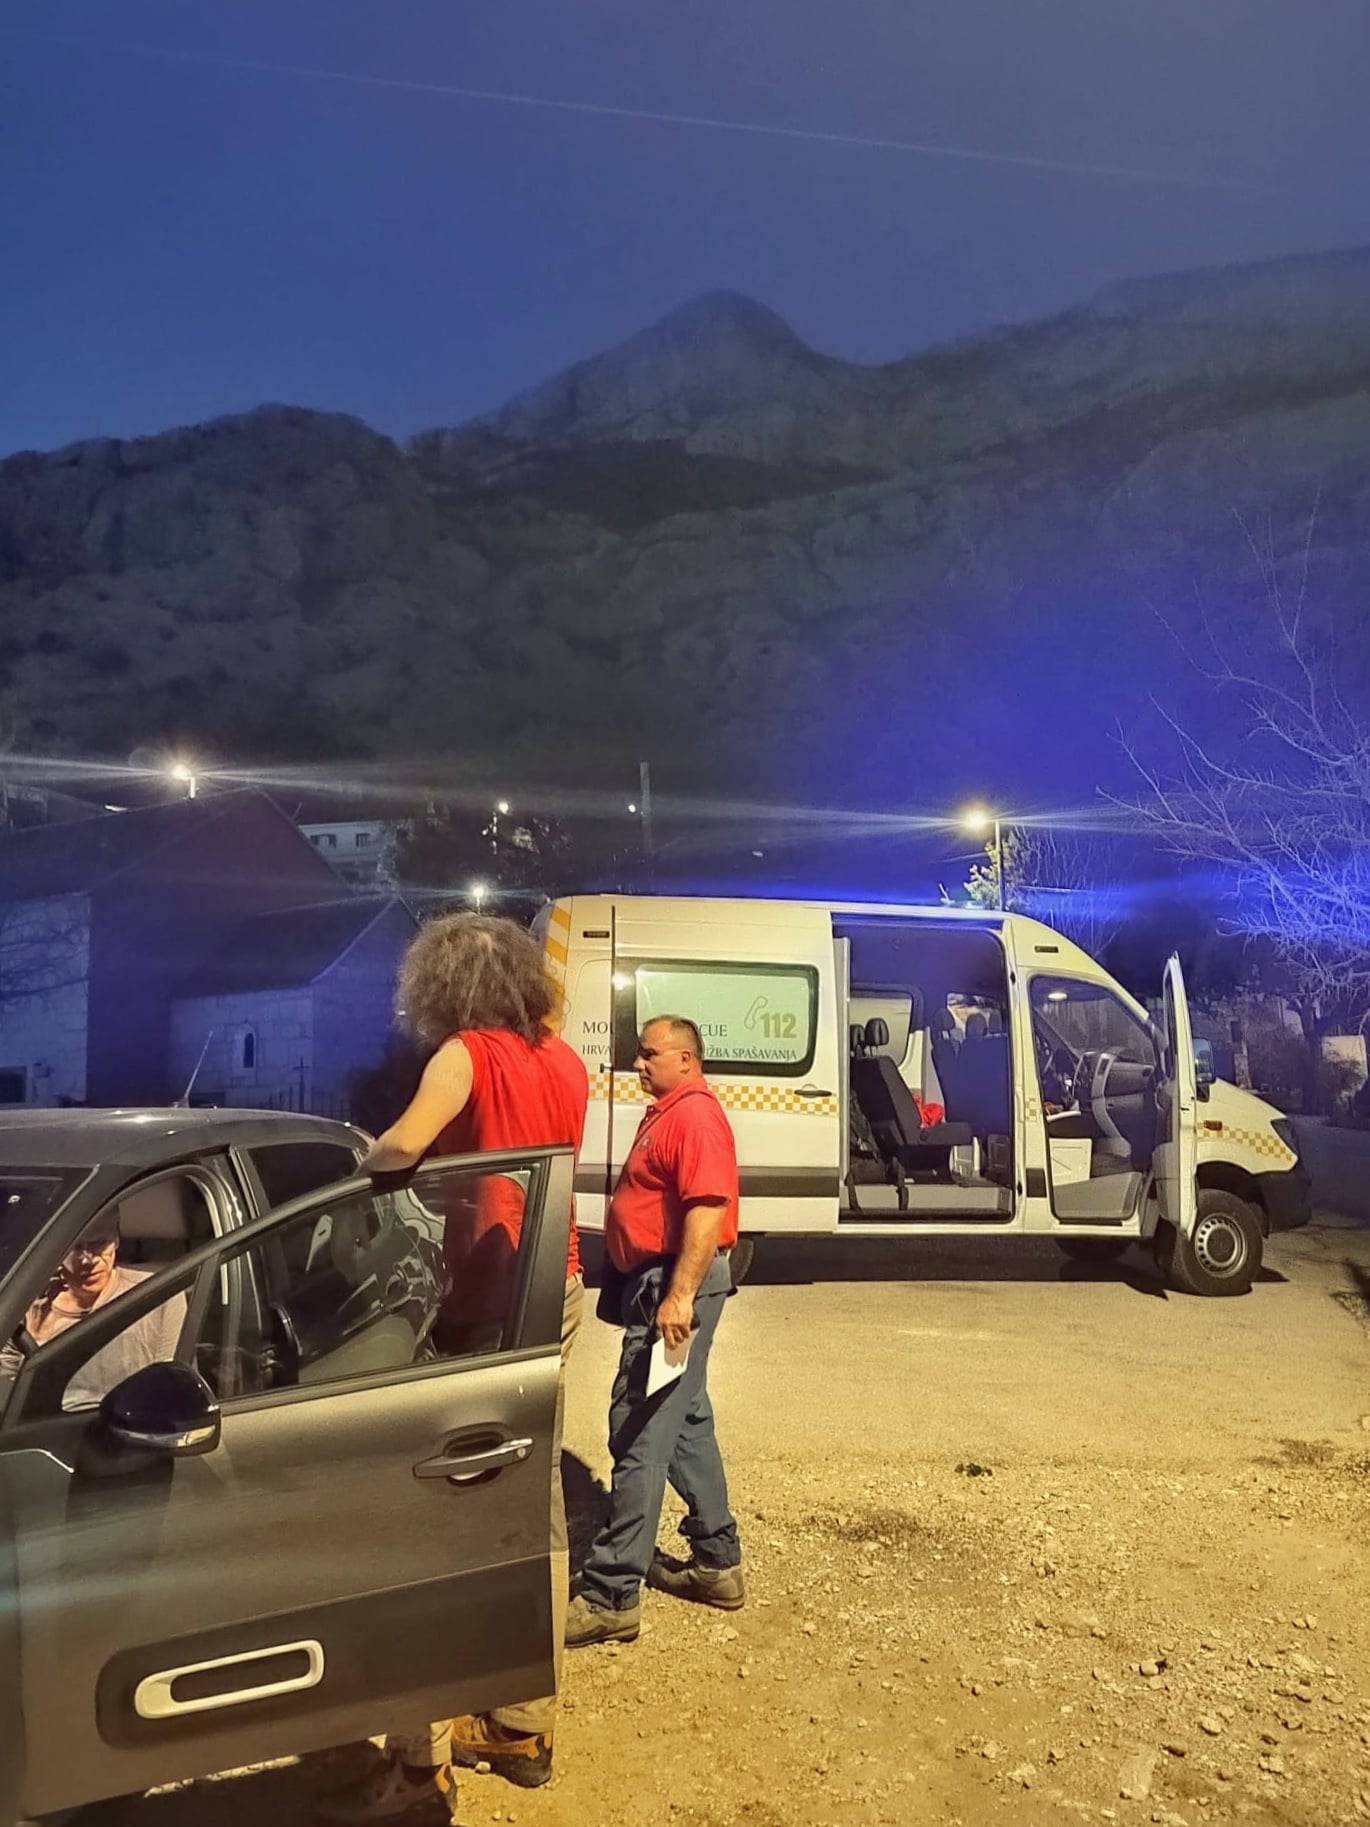 HGSS-ovci spasili izgubljene turiste na planinarskoj stazi: 'Turistička sezona je počela'